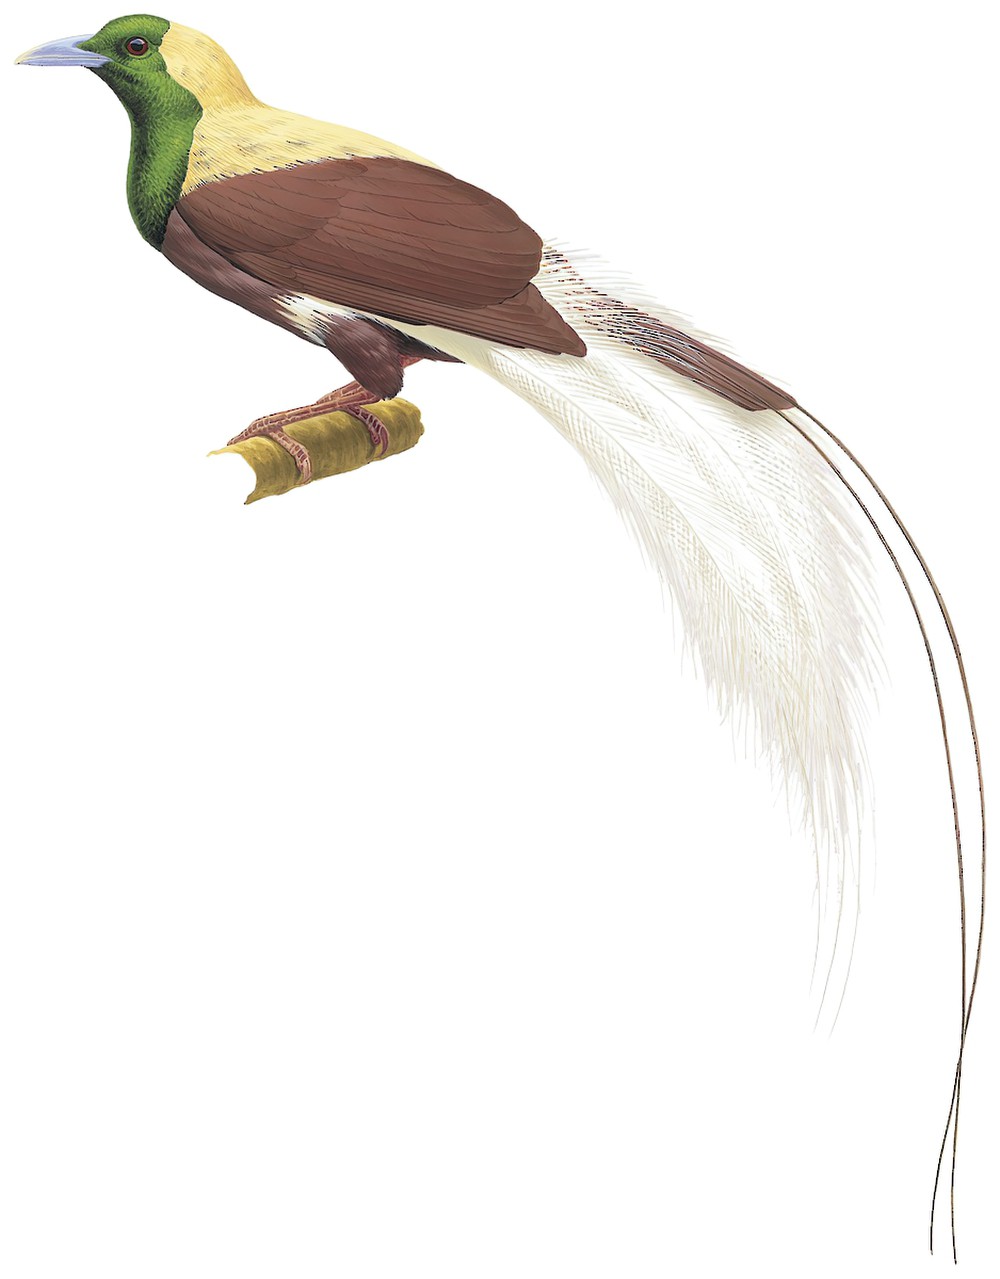 Emperor Bird-of-Paradise / Paradisaea guilielmi